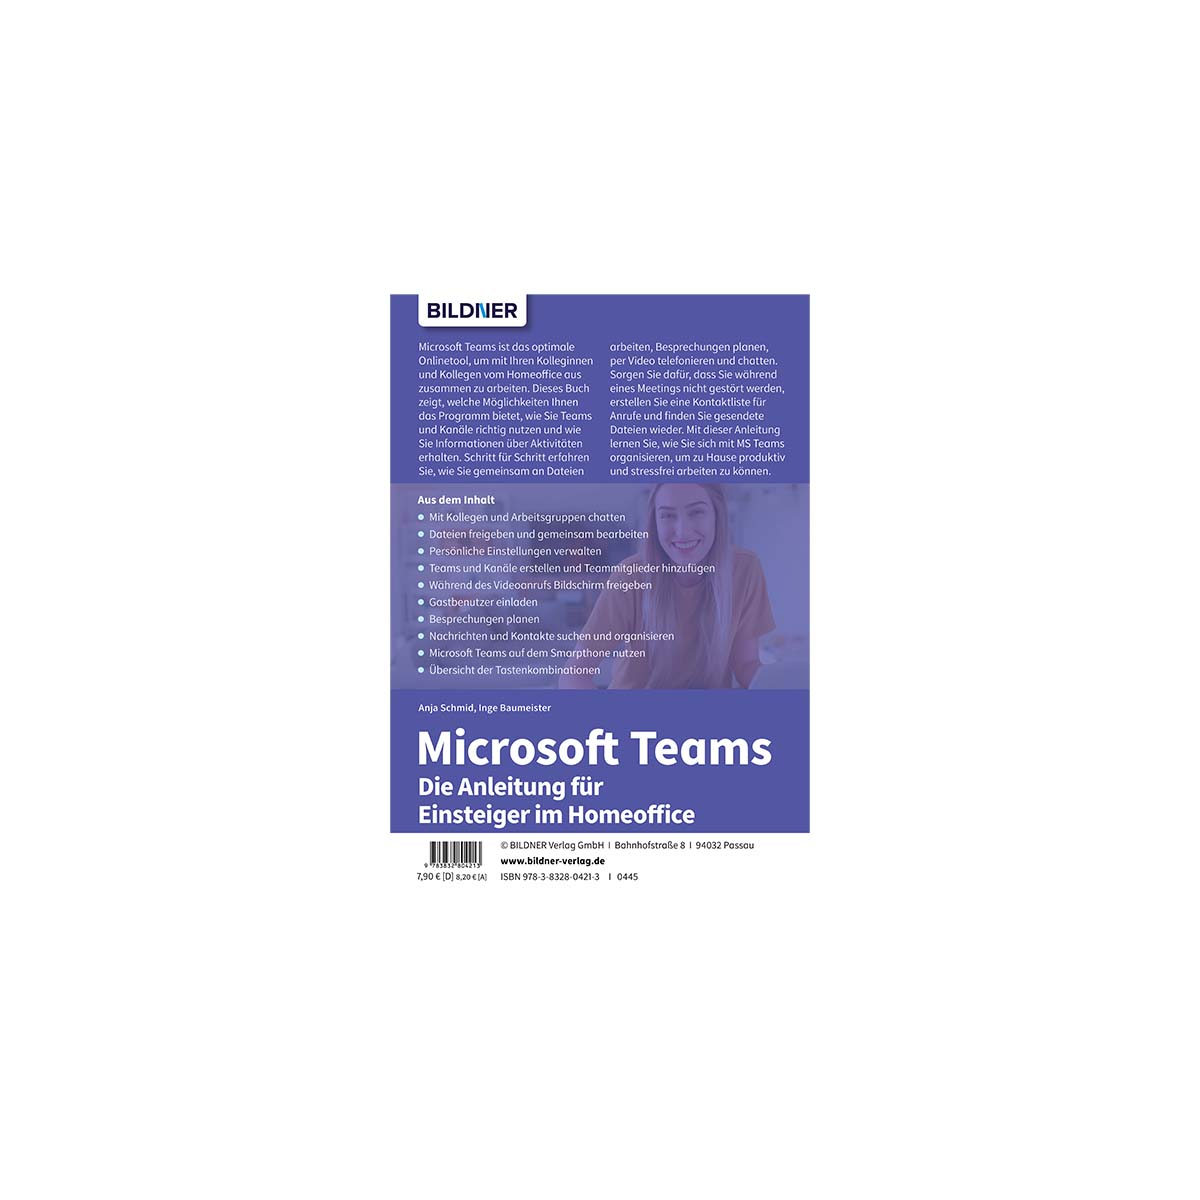 Microsoft Teams - Einsteiger Anleitung im Die Homeoffice für